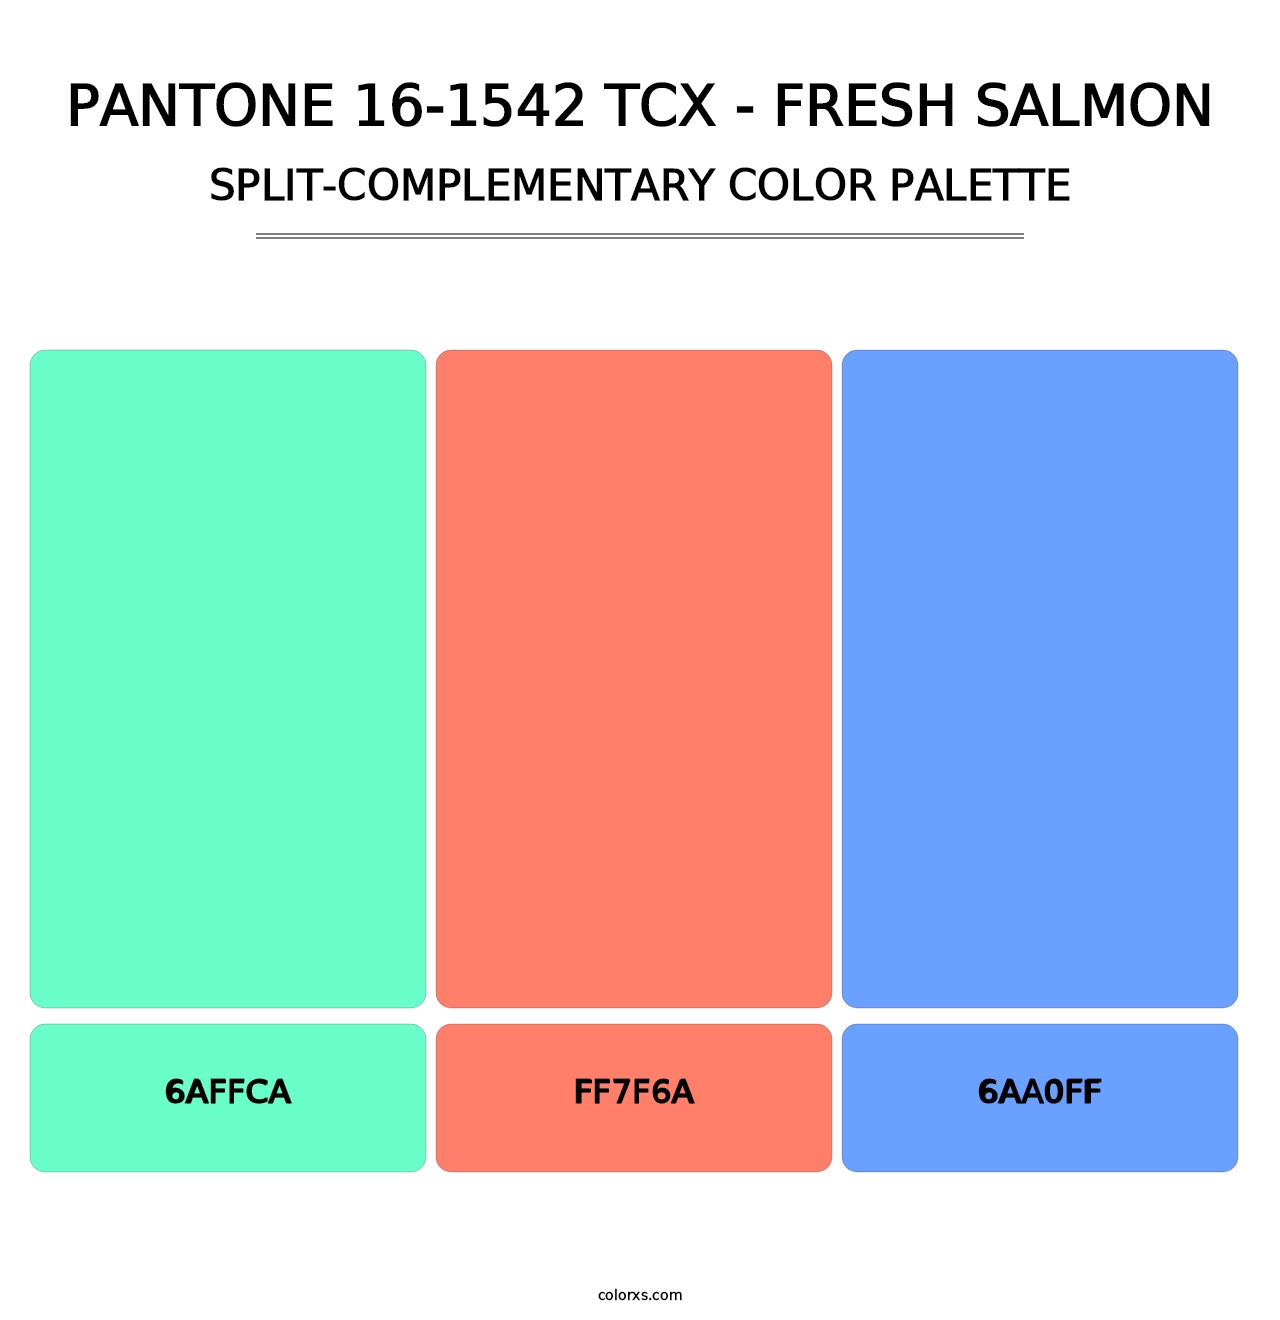 PANTONE 16-1542 TCX - Fresh Salmon - Split-Complementary Color Palette